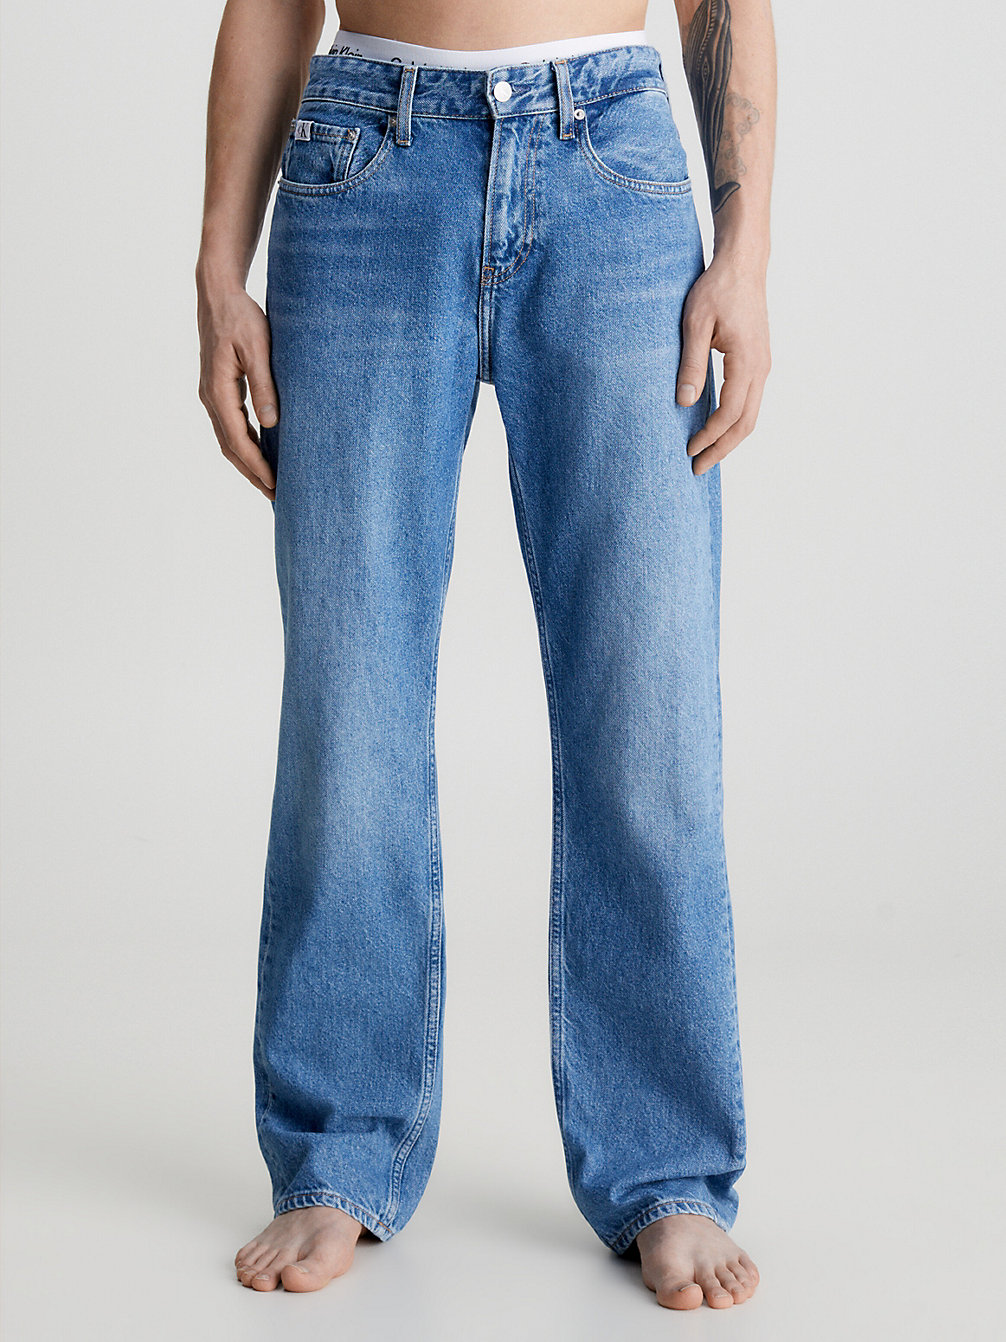 DENIM MEDIUM > 90's Straight Jeans > undefined men - Calvin Klein